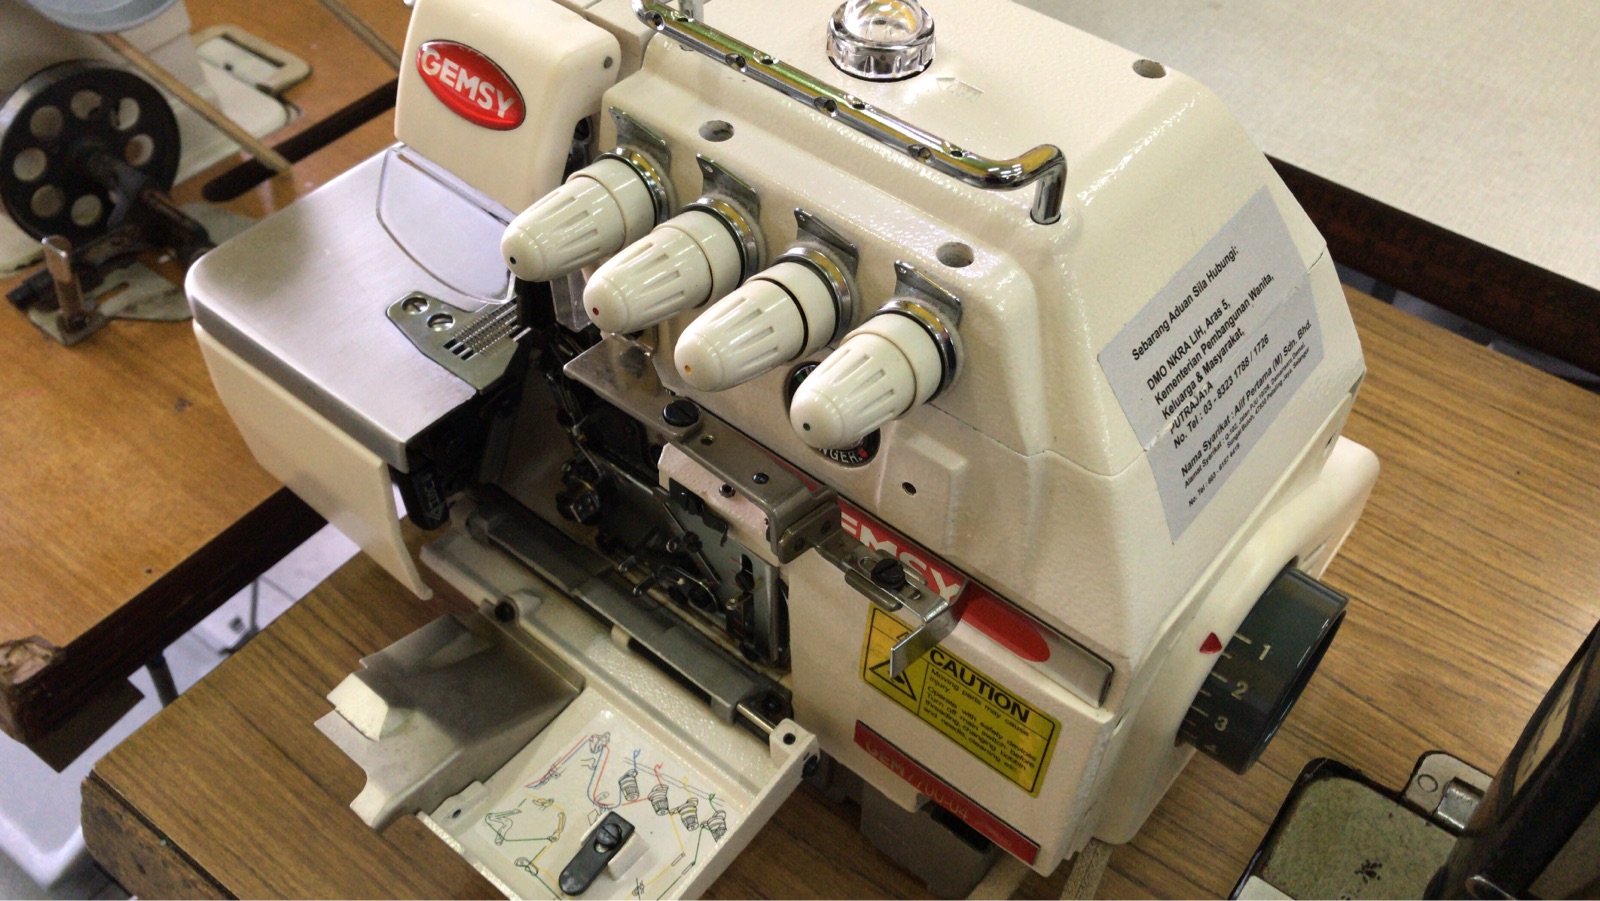 Sevis Gemsy Overlock Sewing Machine 